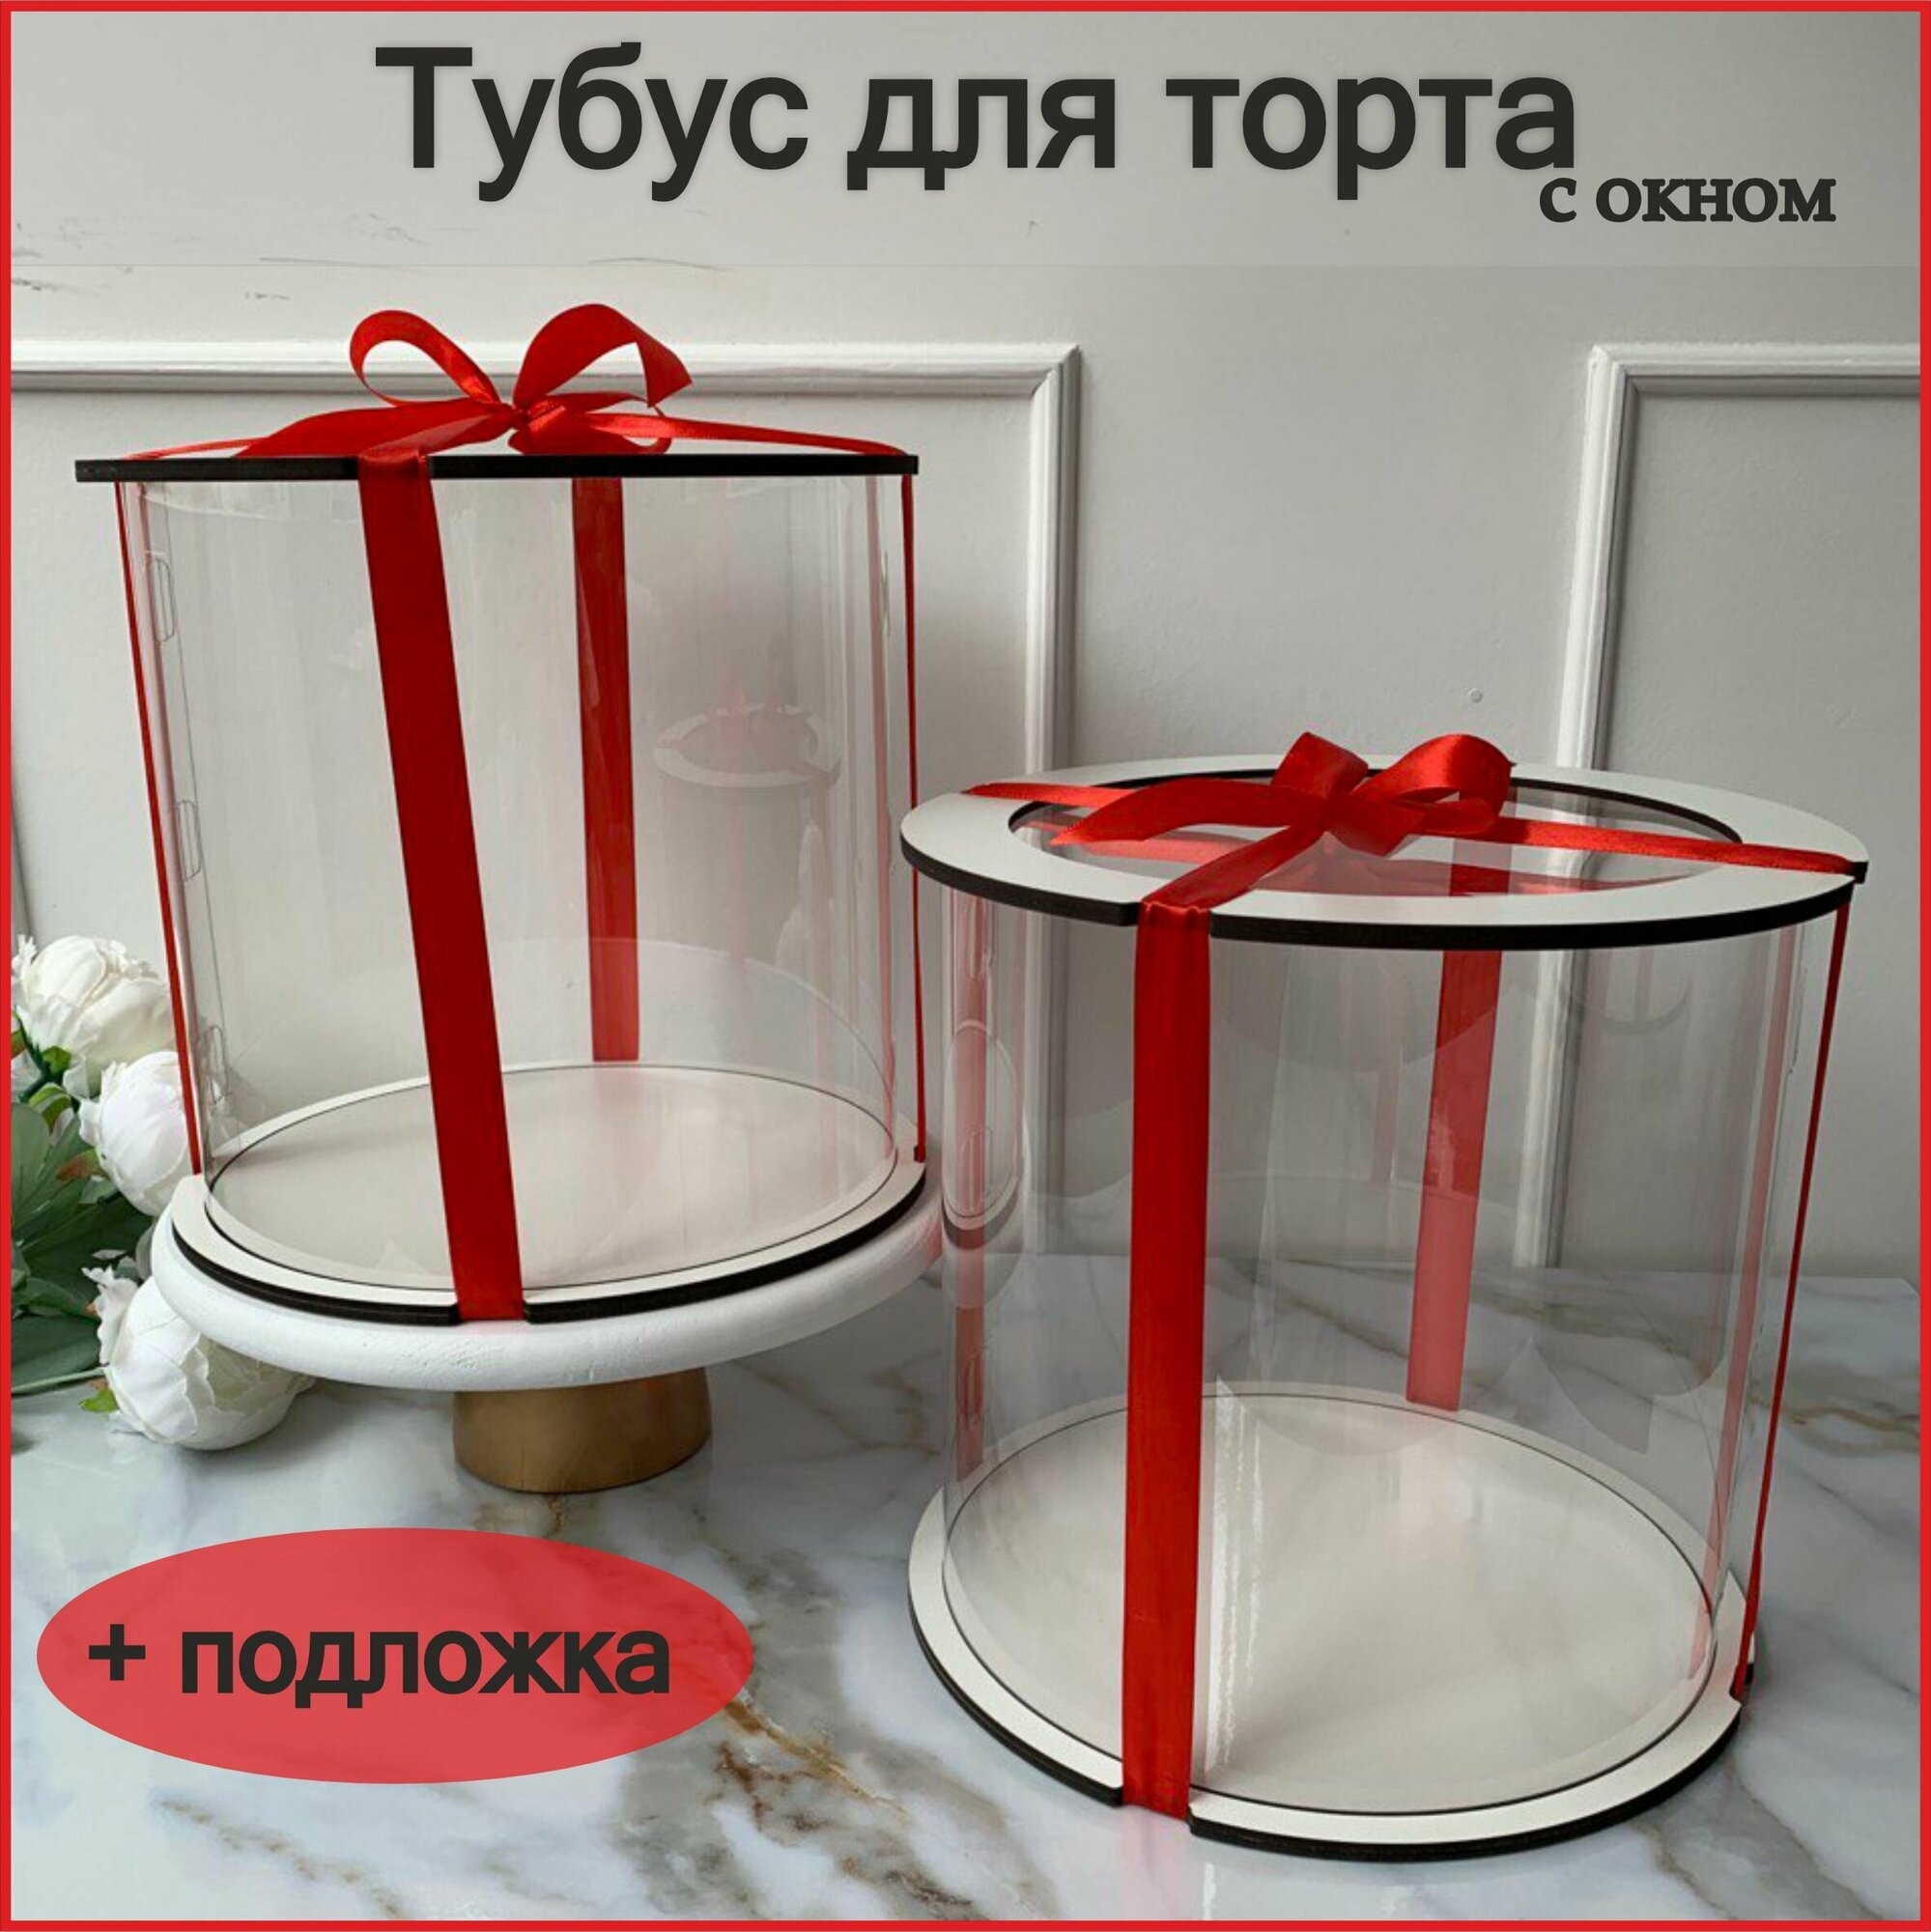 Упаковка коробка прозрачный круглый тубус, с окном, для торта, с подложкой в комплекте 20 см